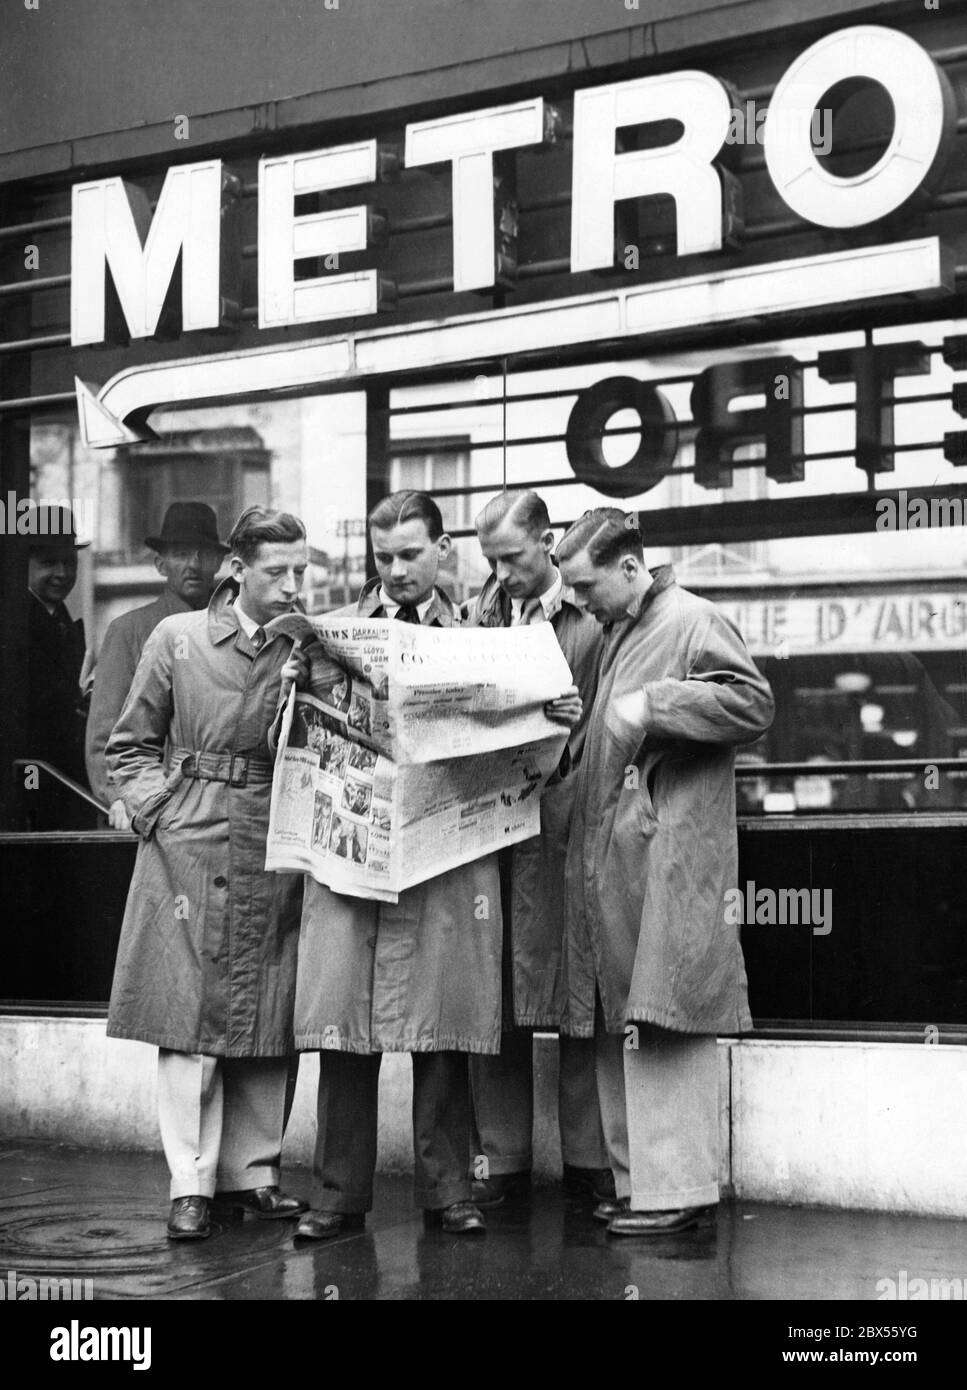 Eine Gruppe junger Männer las zusammen die aktuellen Ereignisse in der britischen Zeitung 'Daily Express'. Die Überschrift "Wehrpflicht" kündigt den Truppeneinruf an. Stockfoto